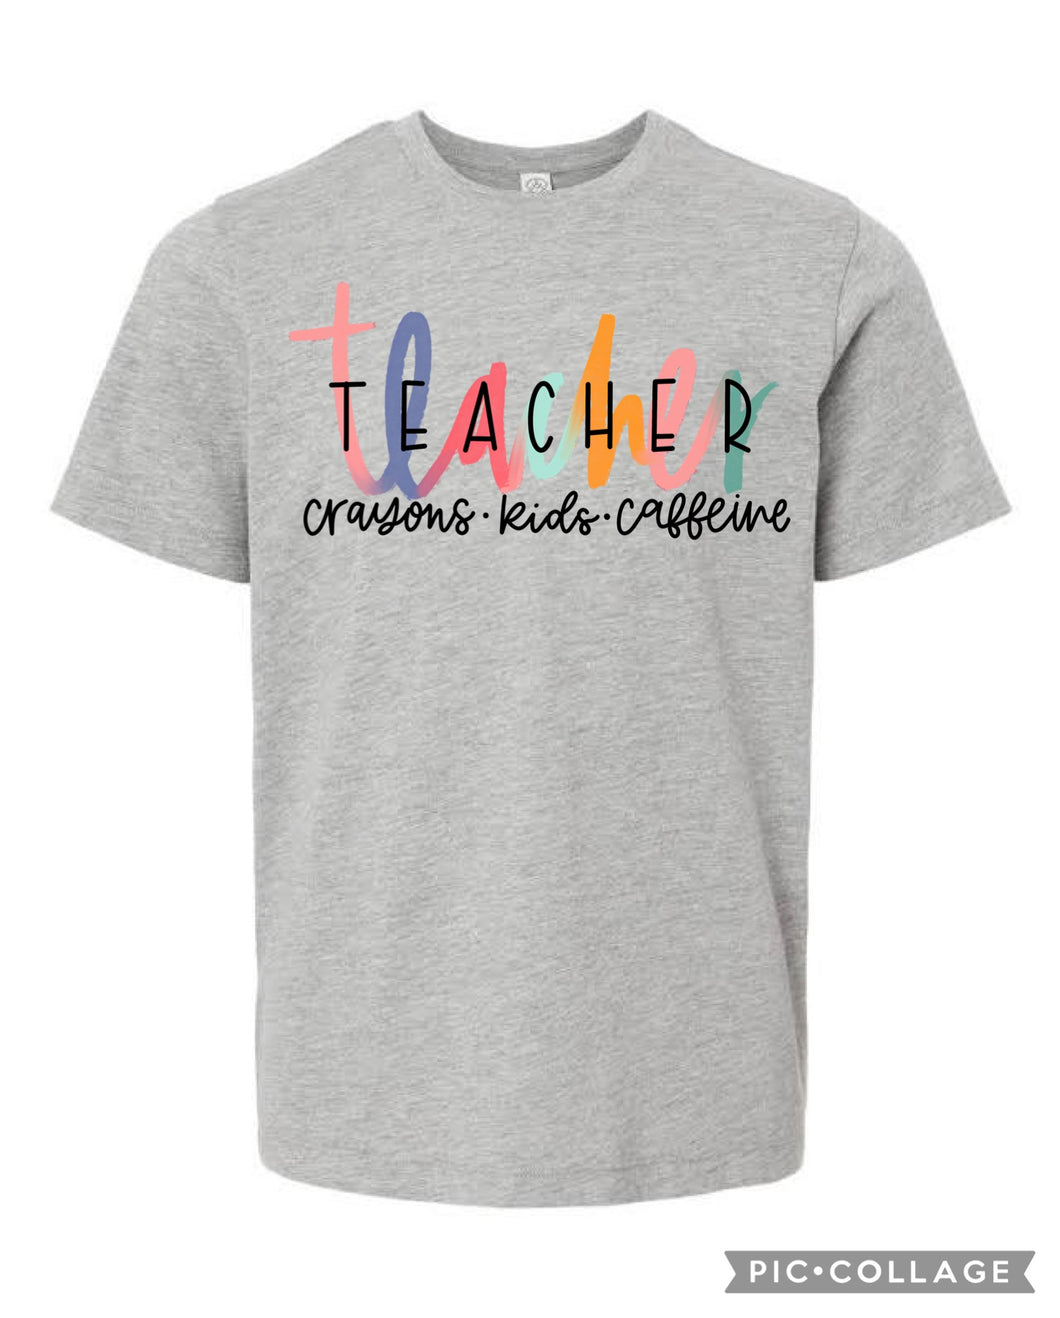 Teacher crayons kids caffeine